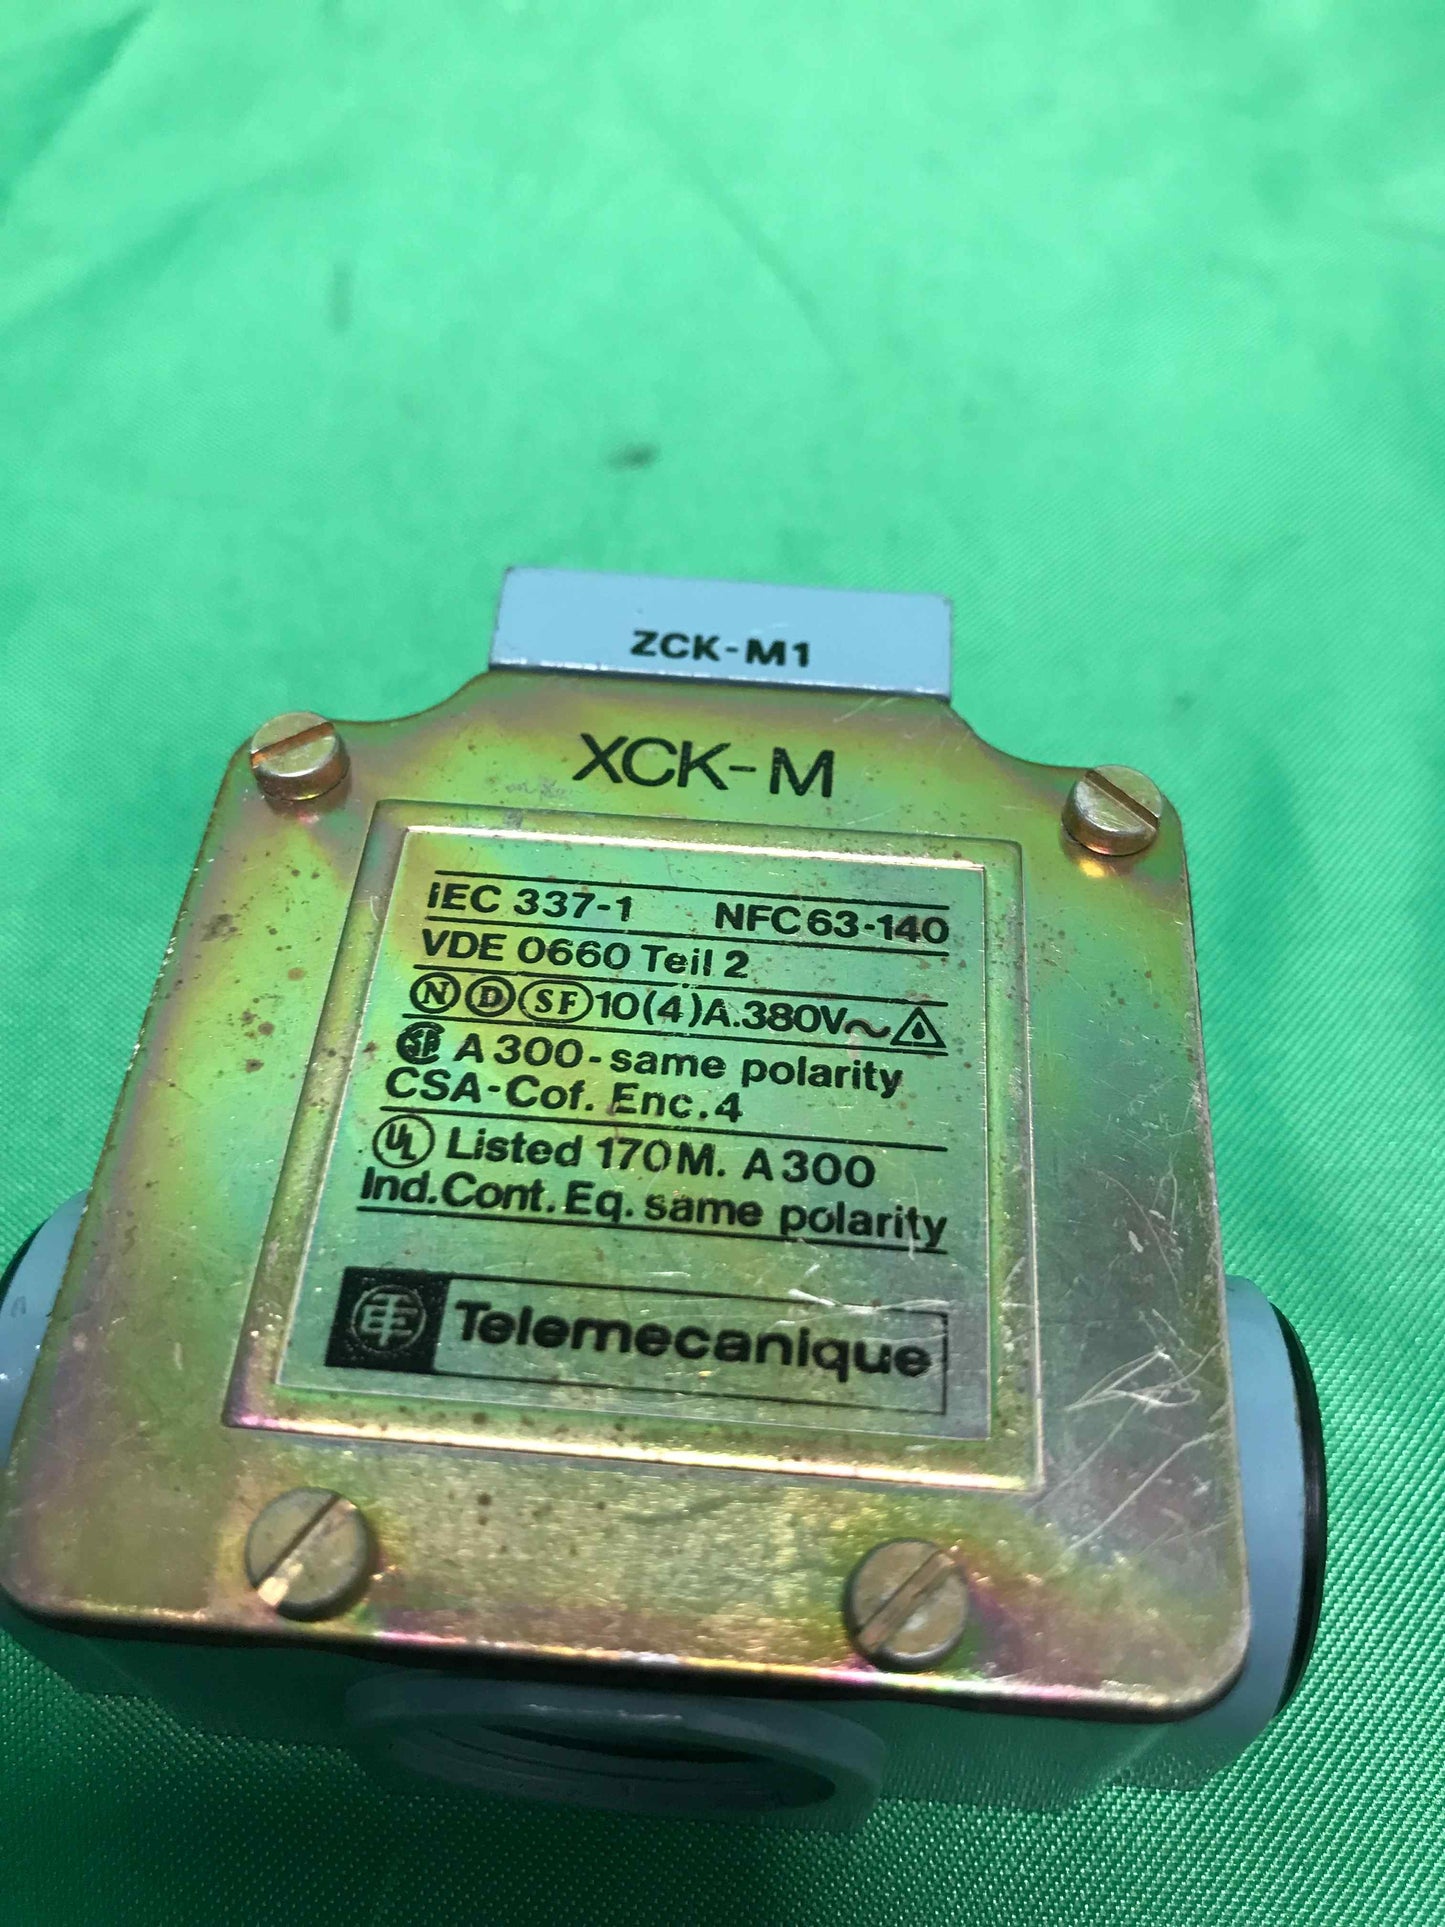 Telemecanique-XCK-M1/XCKM1